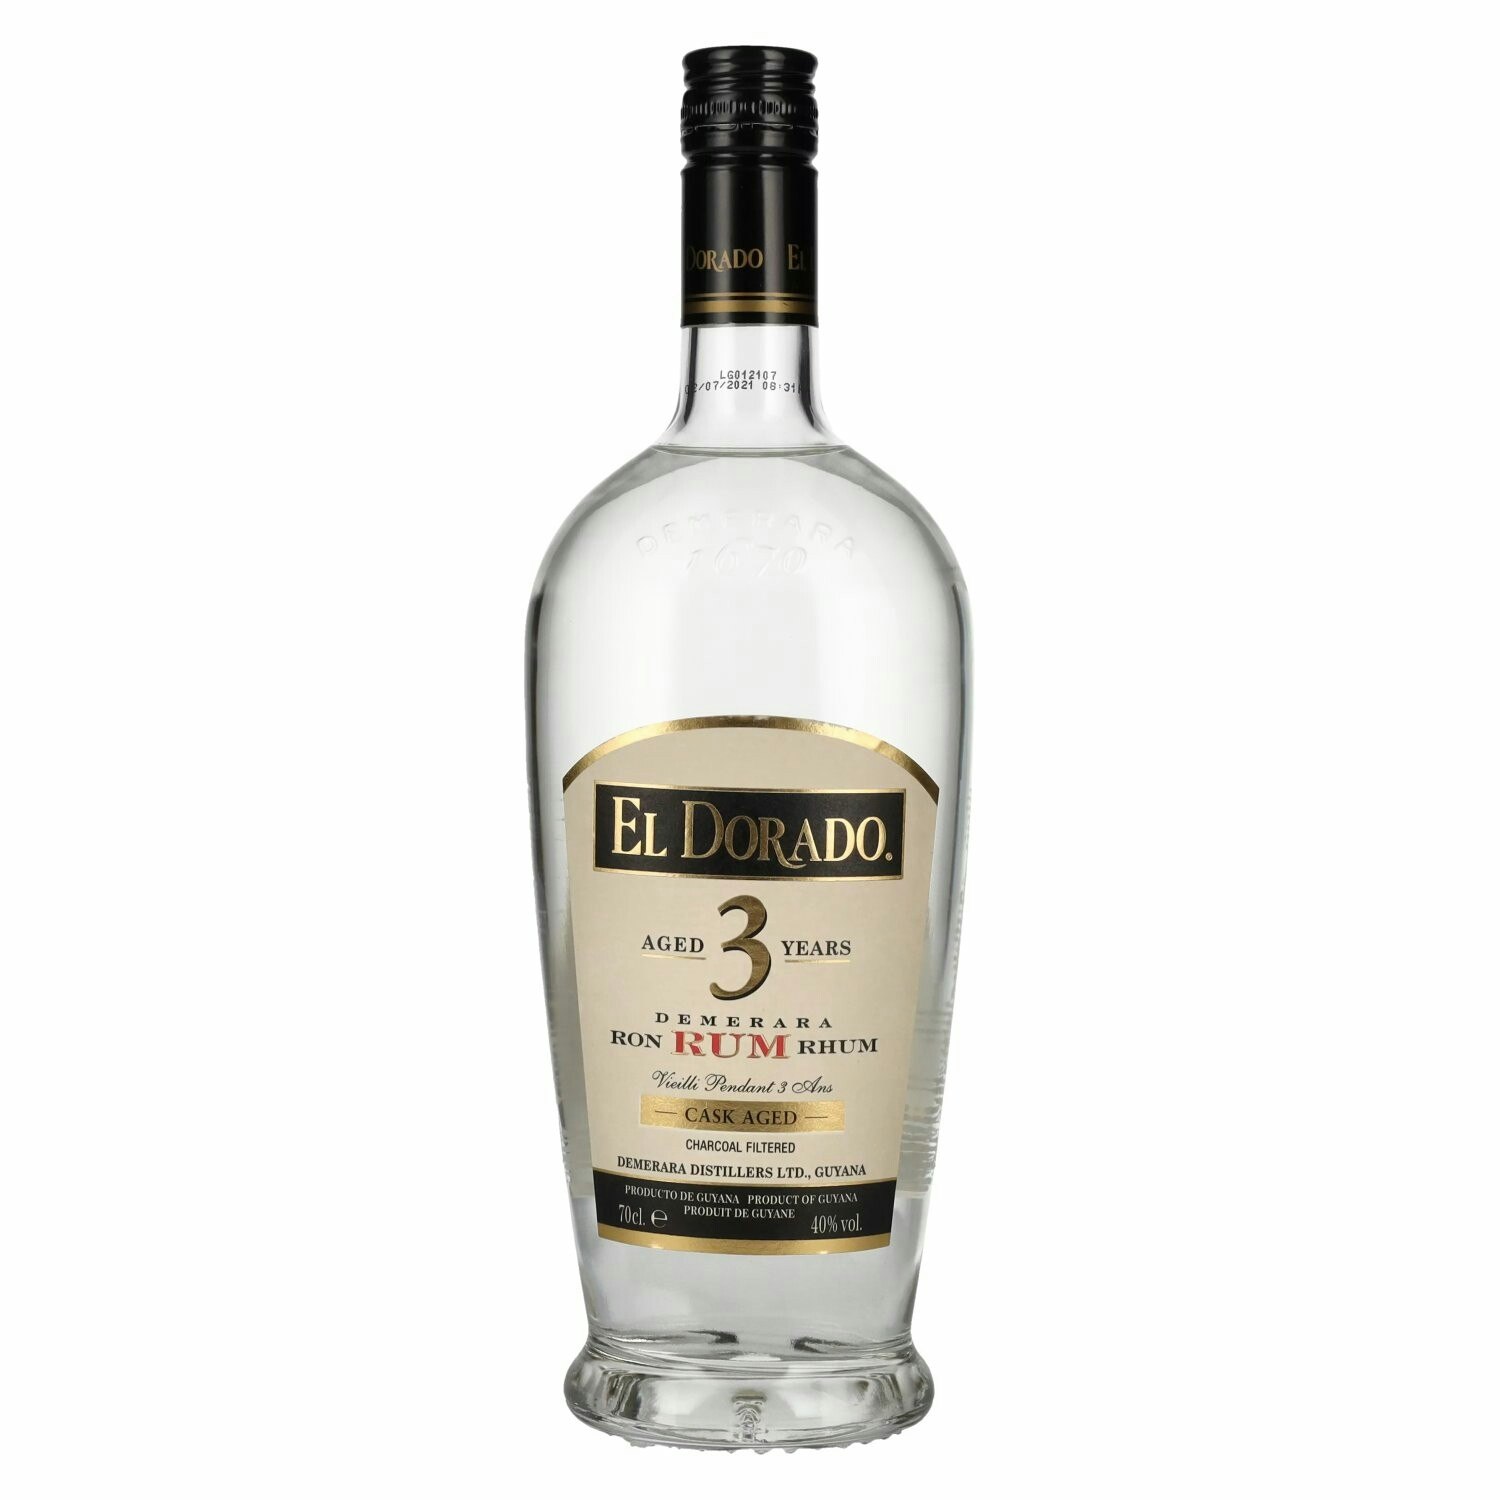 El Dorado 3 Years Old Cask Aged Demerara Rum 40% Vol. 0,7l